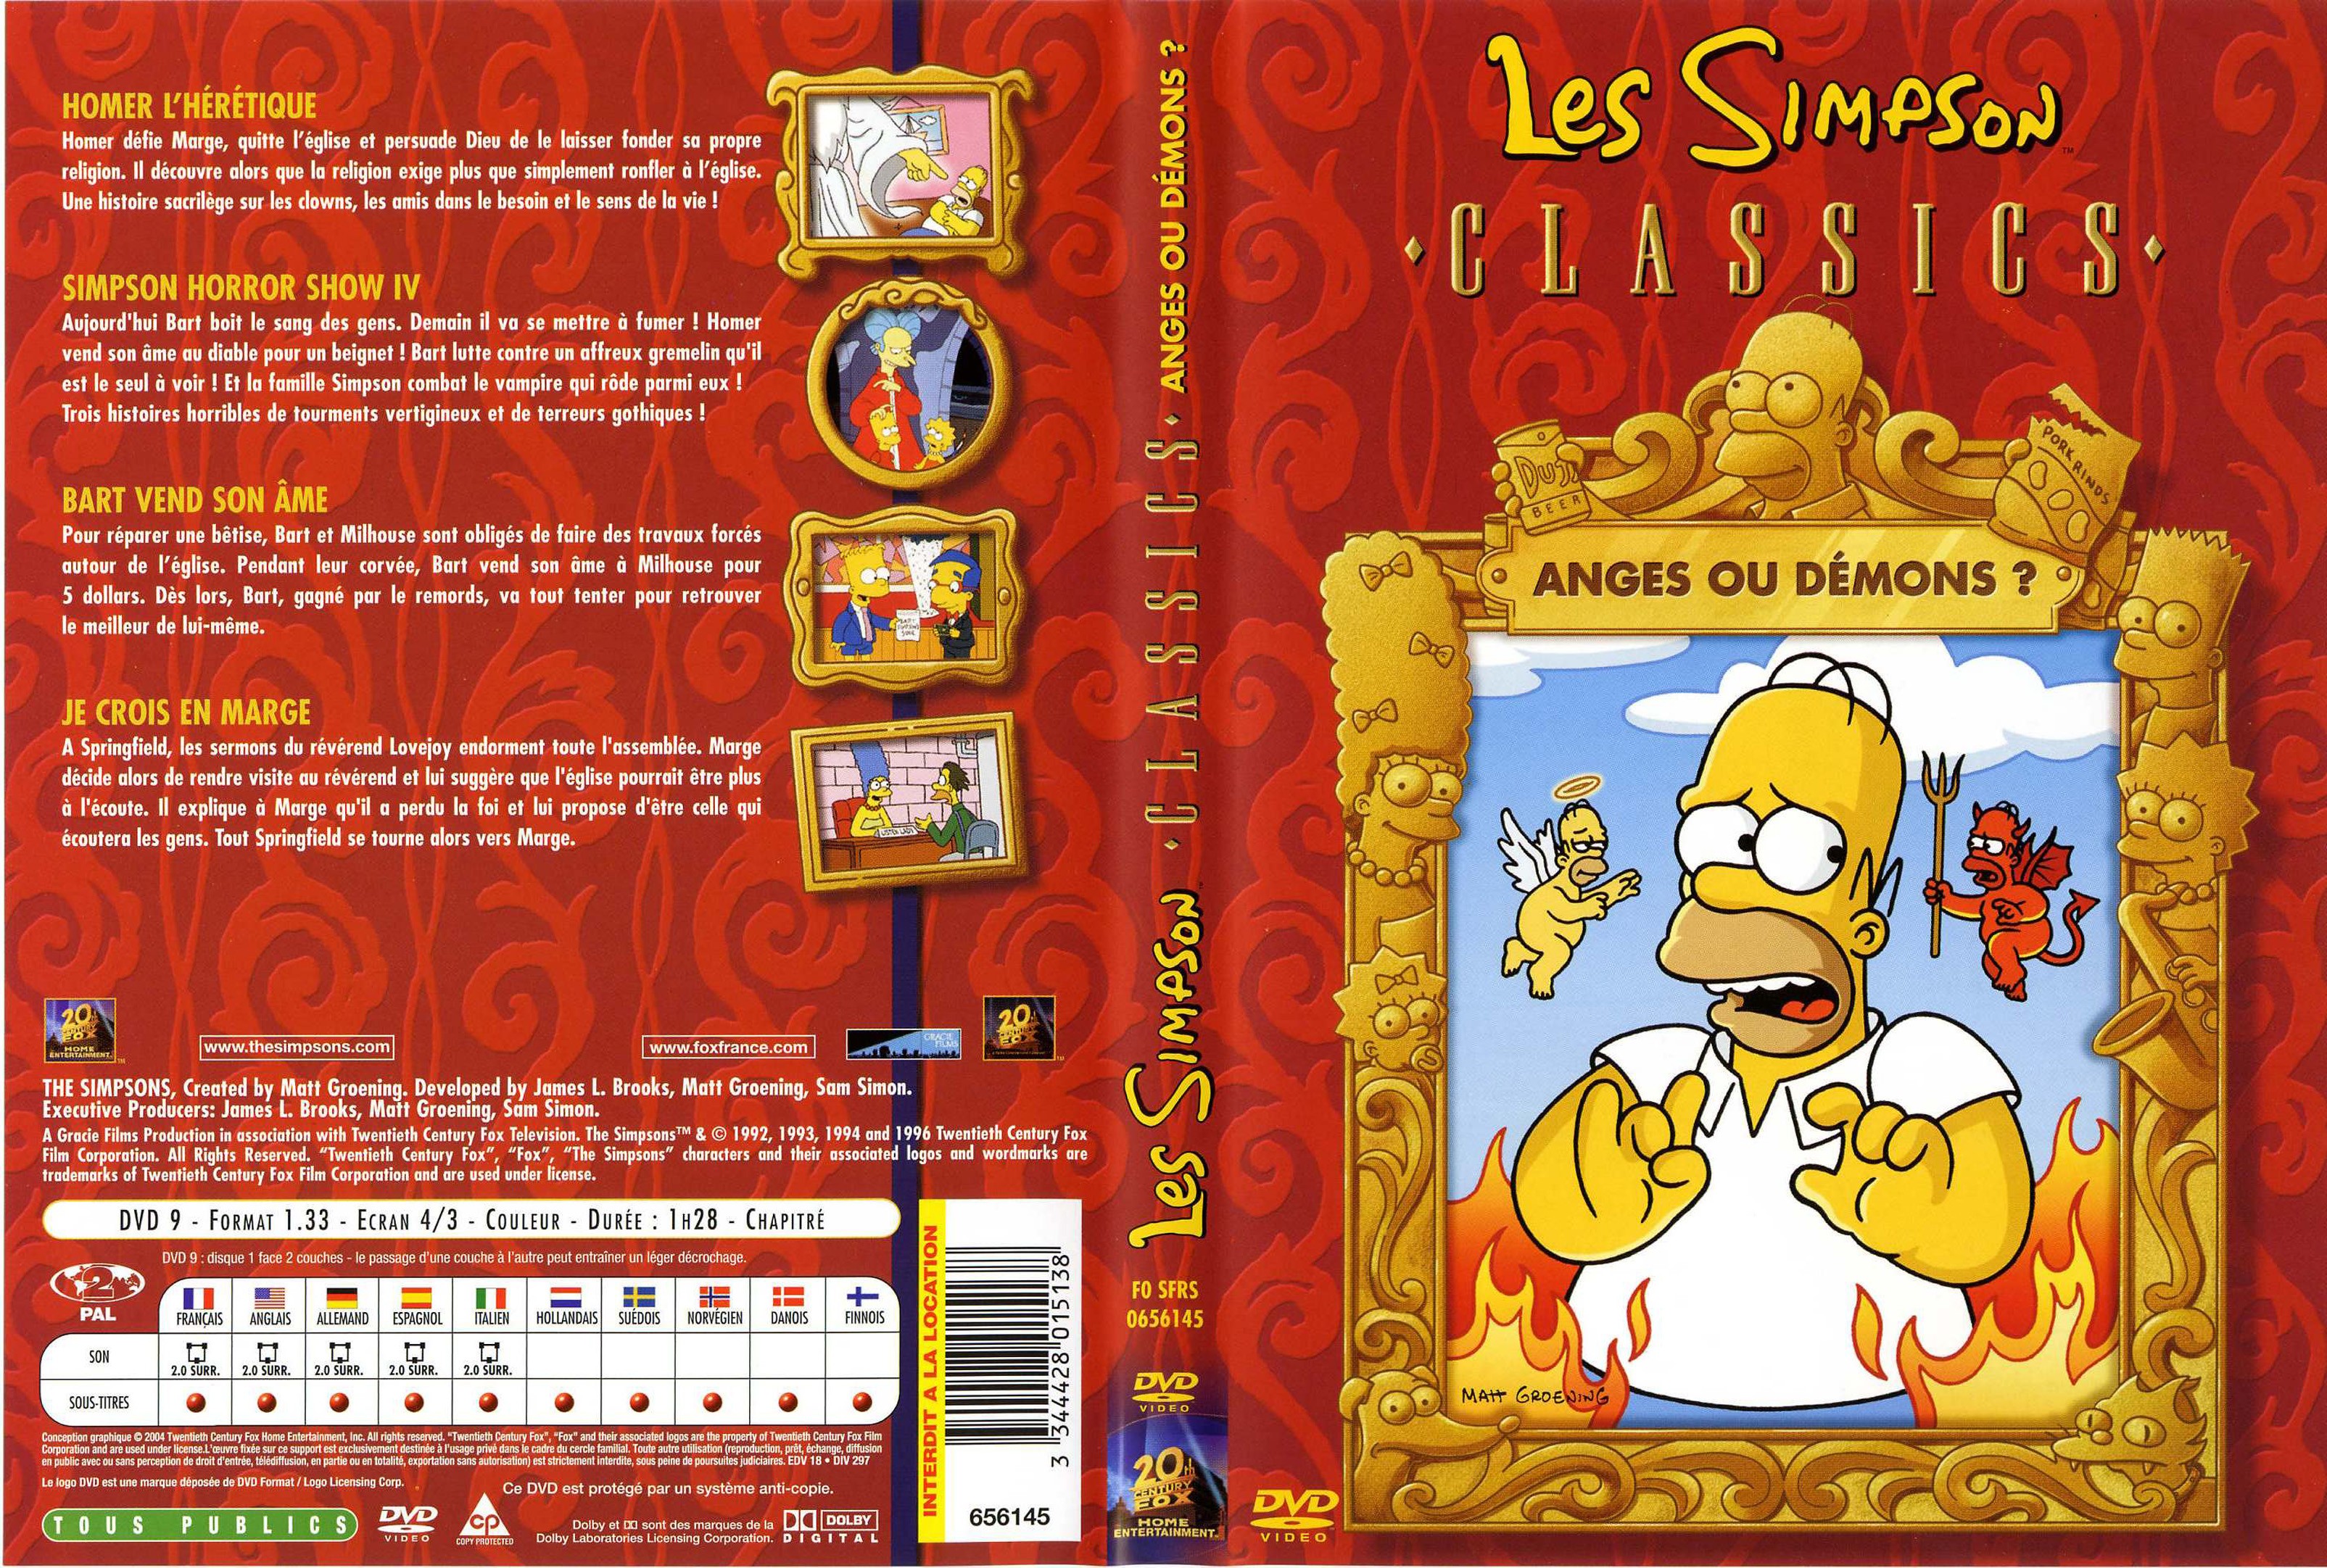 Jaquette DVD Les simpson anges ou demons